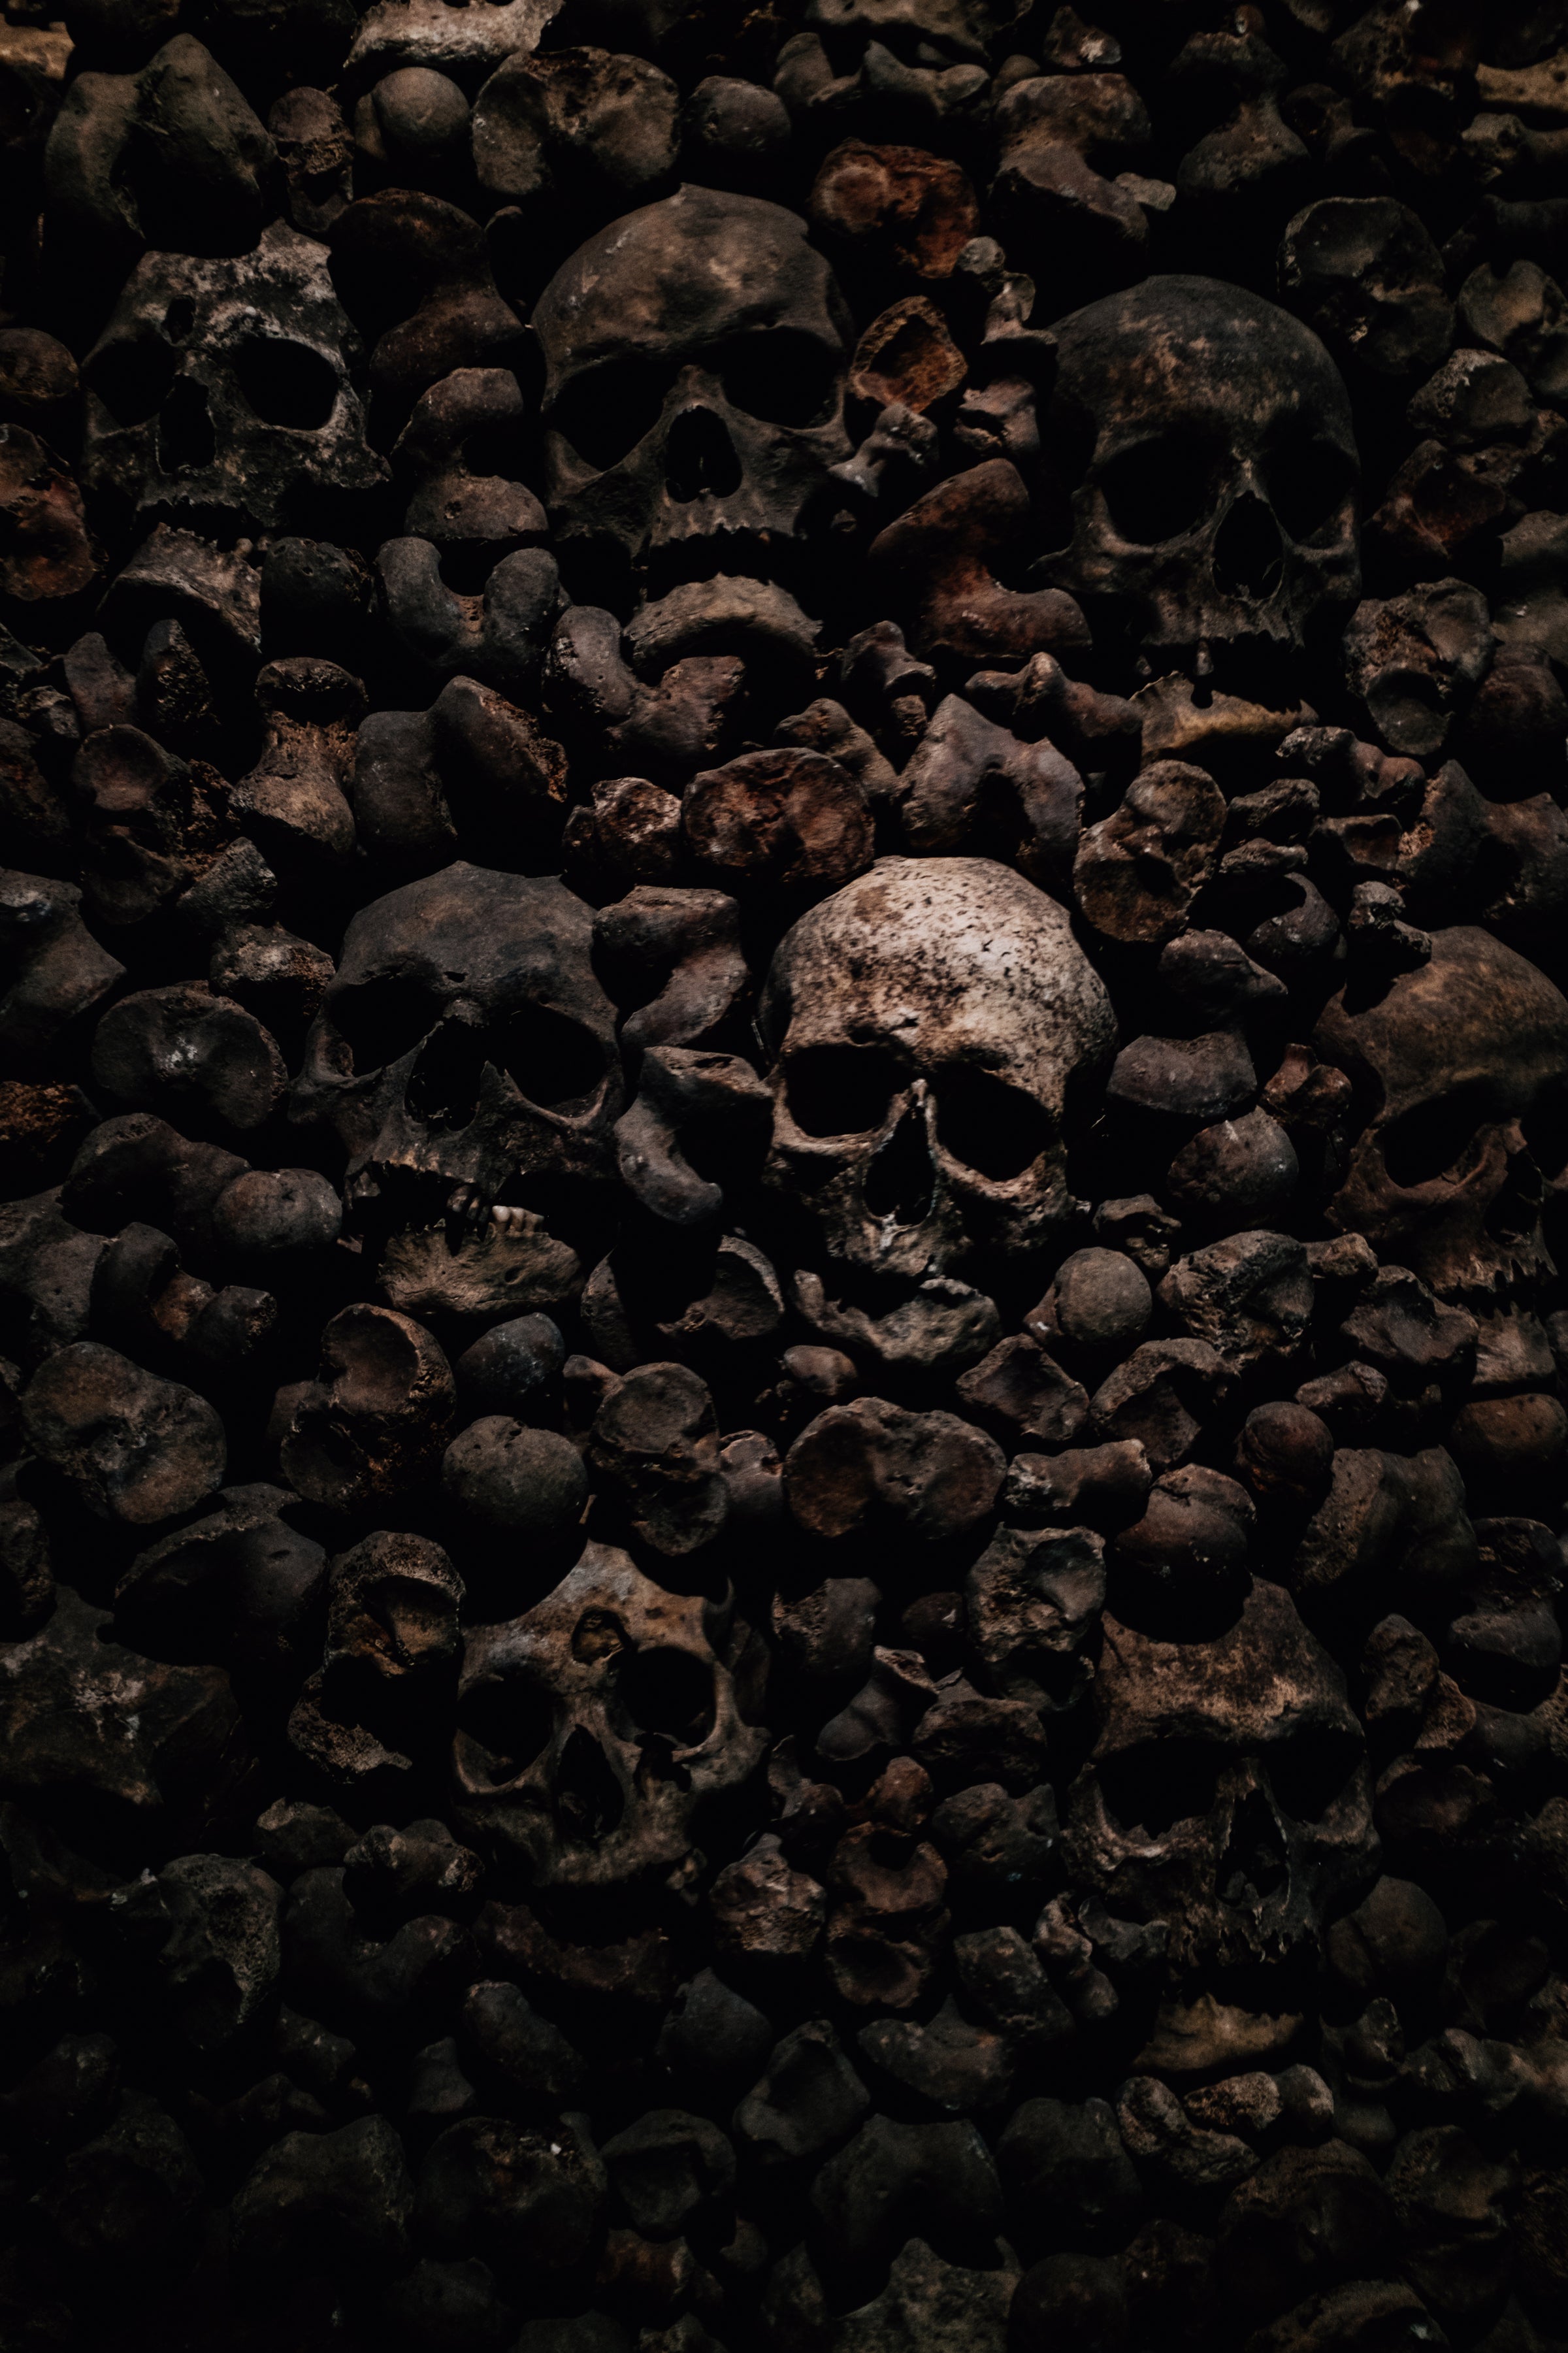 skulls-and-bones-in-darkness